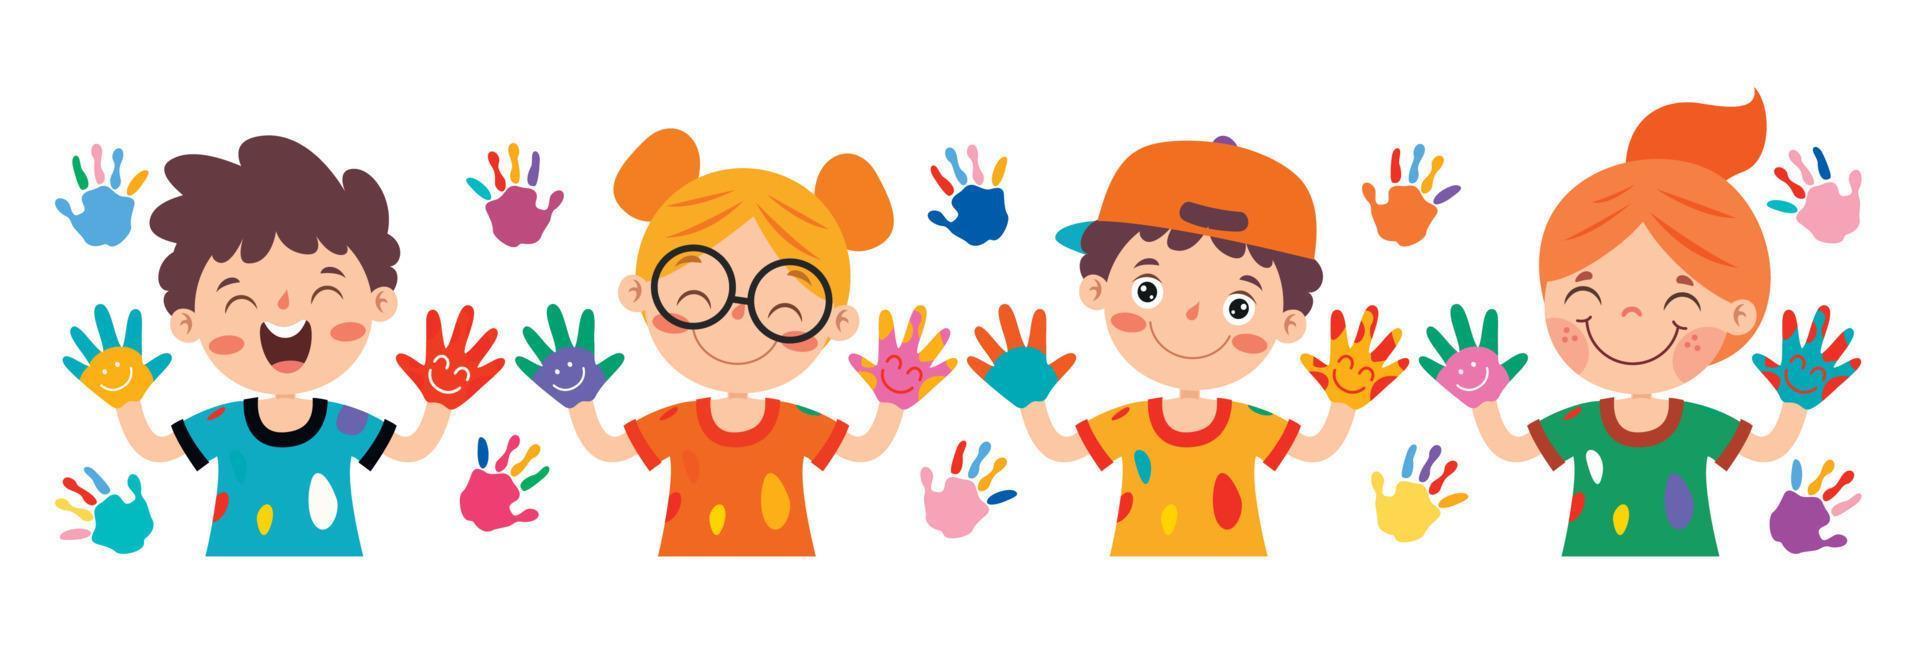 färgrik målad händer av liten barn vektor